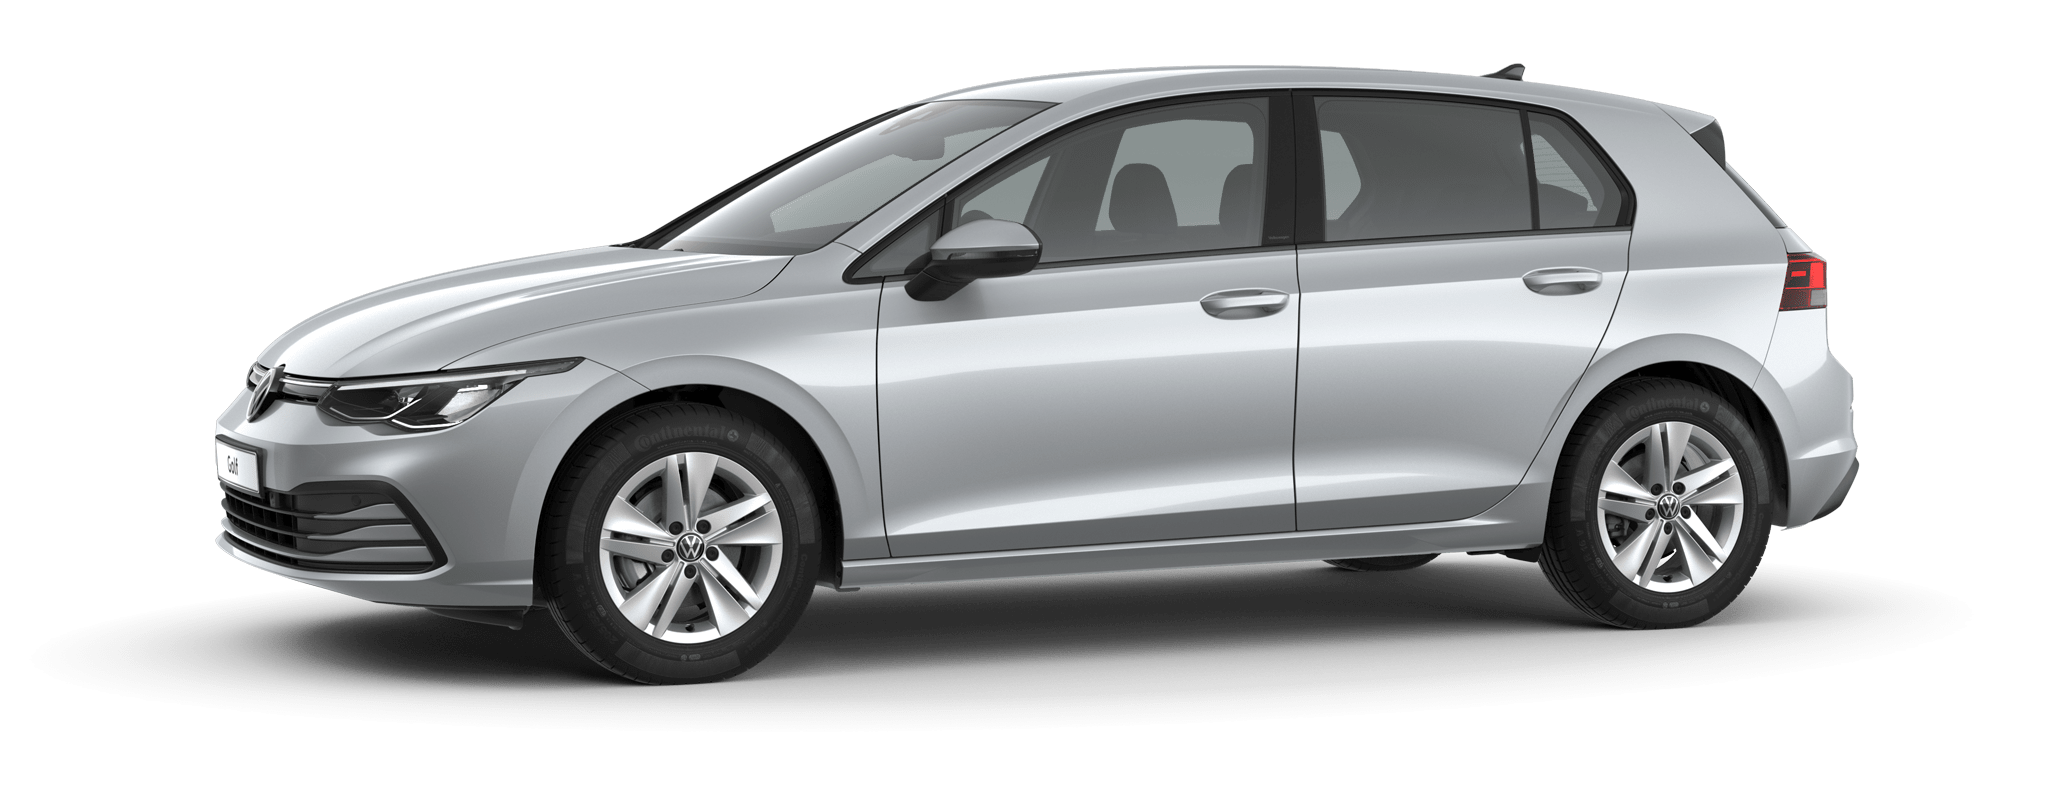 Temerity Passend Betekenis Volkswagen Golf > Perfectie tot in detail | Volkswagen